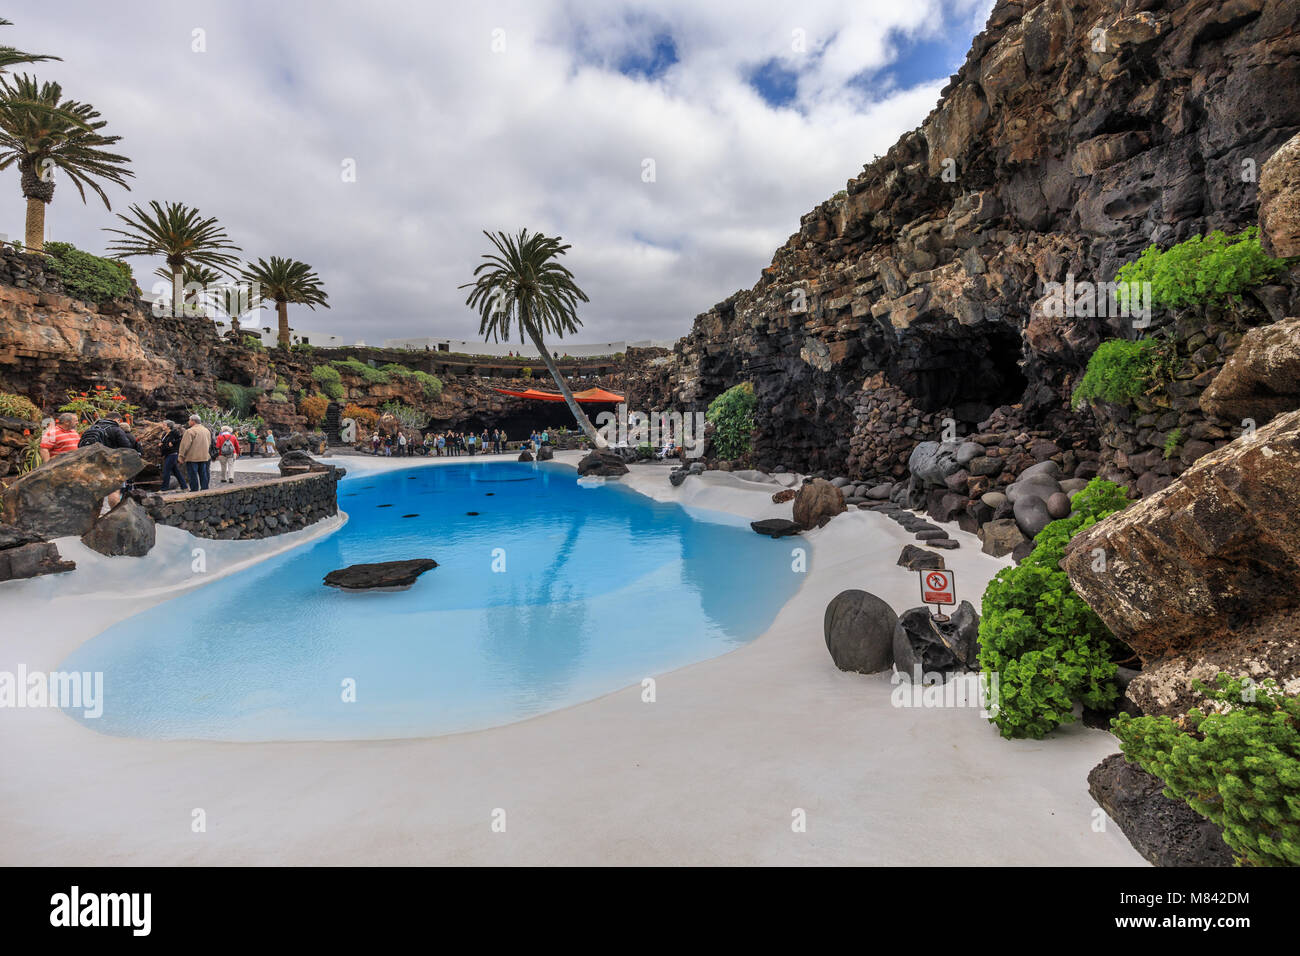 Schwimmbad in der Lavahöhle Jameos del Agua, gebaut von dem Künstler Cesar Manrique, Lanzarote, Kanarische Inseln, Spanien, Europa Stockfoto